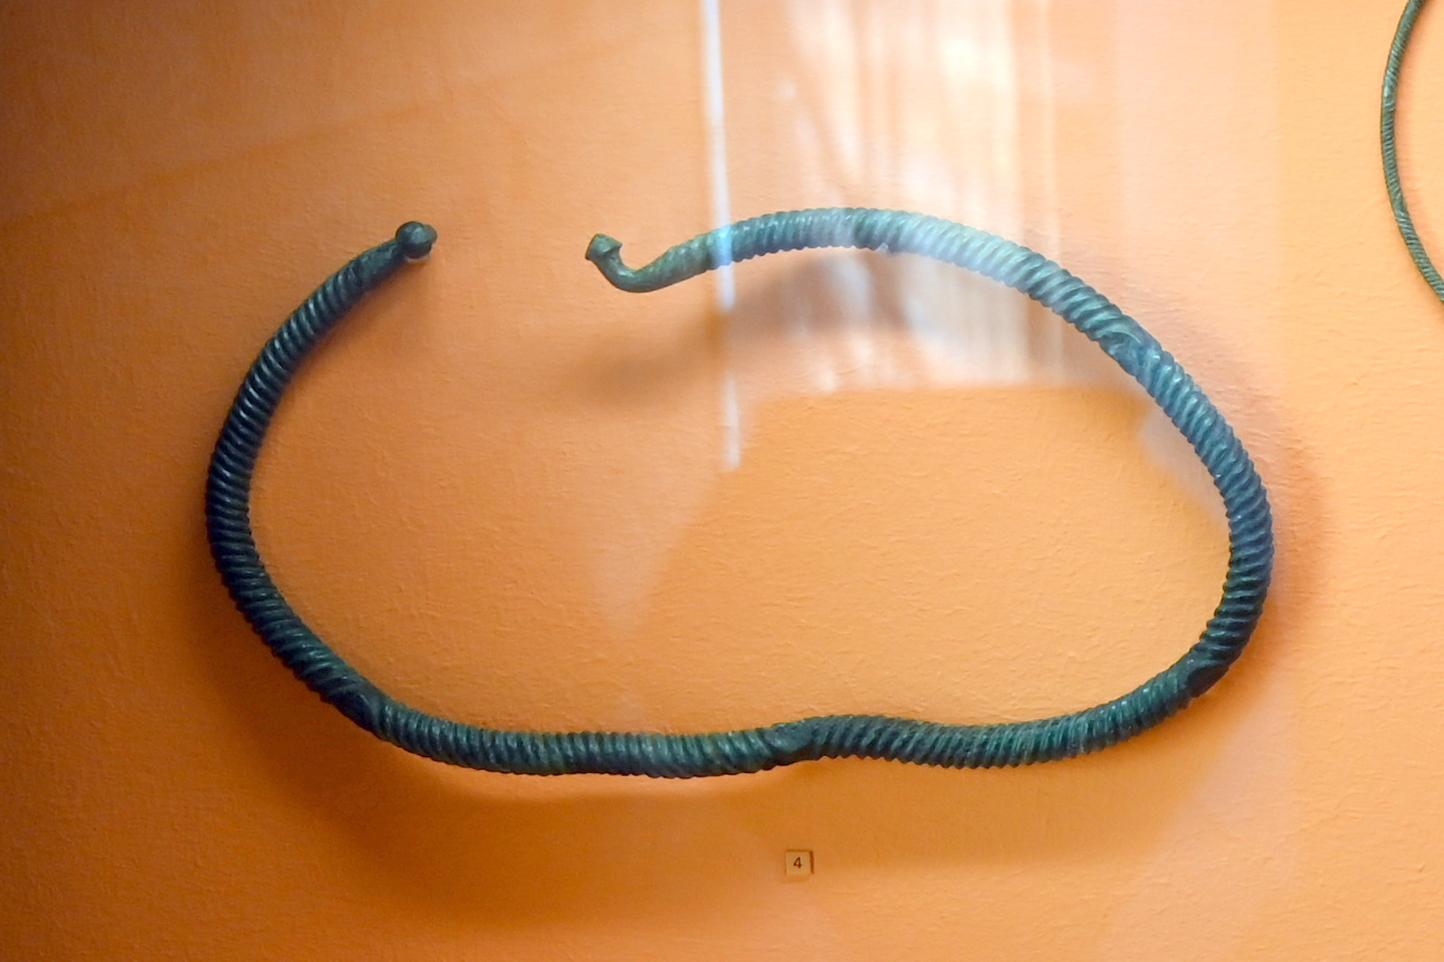 Halsring, 600 - 500 v. Chr., Bild 1/2